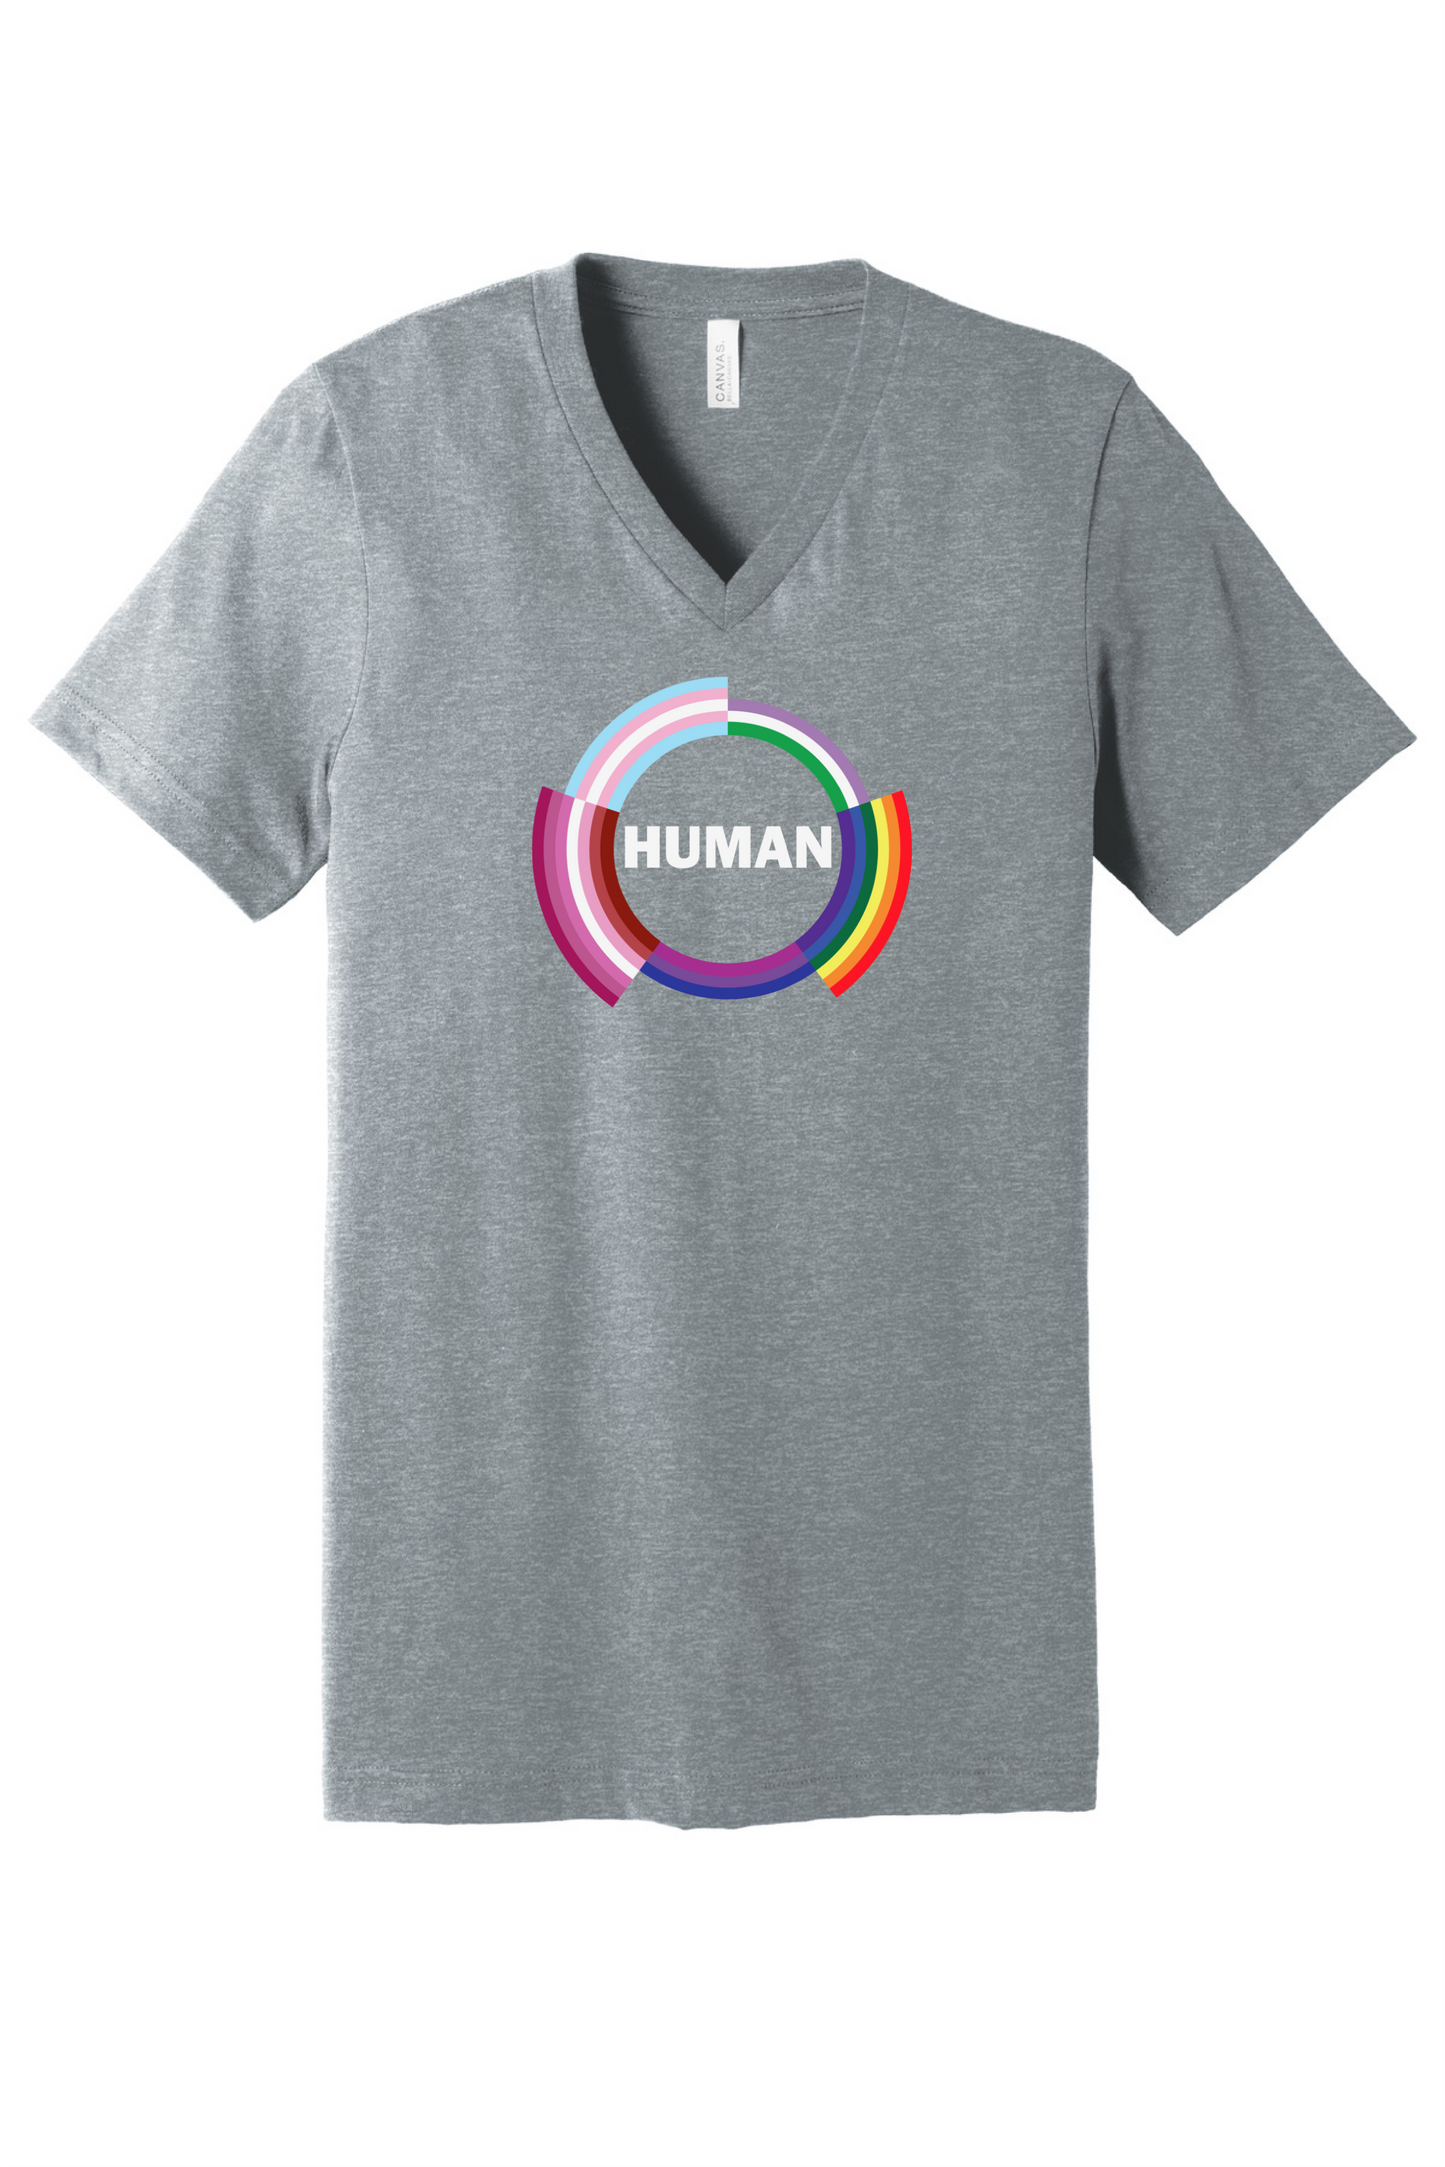 HUMAN Pride Top